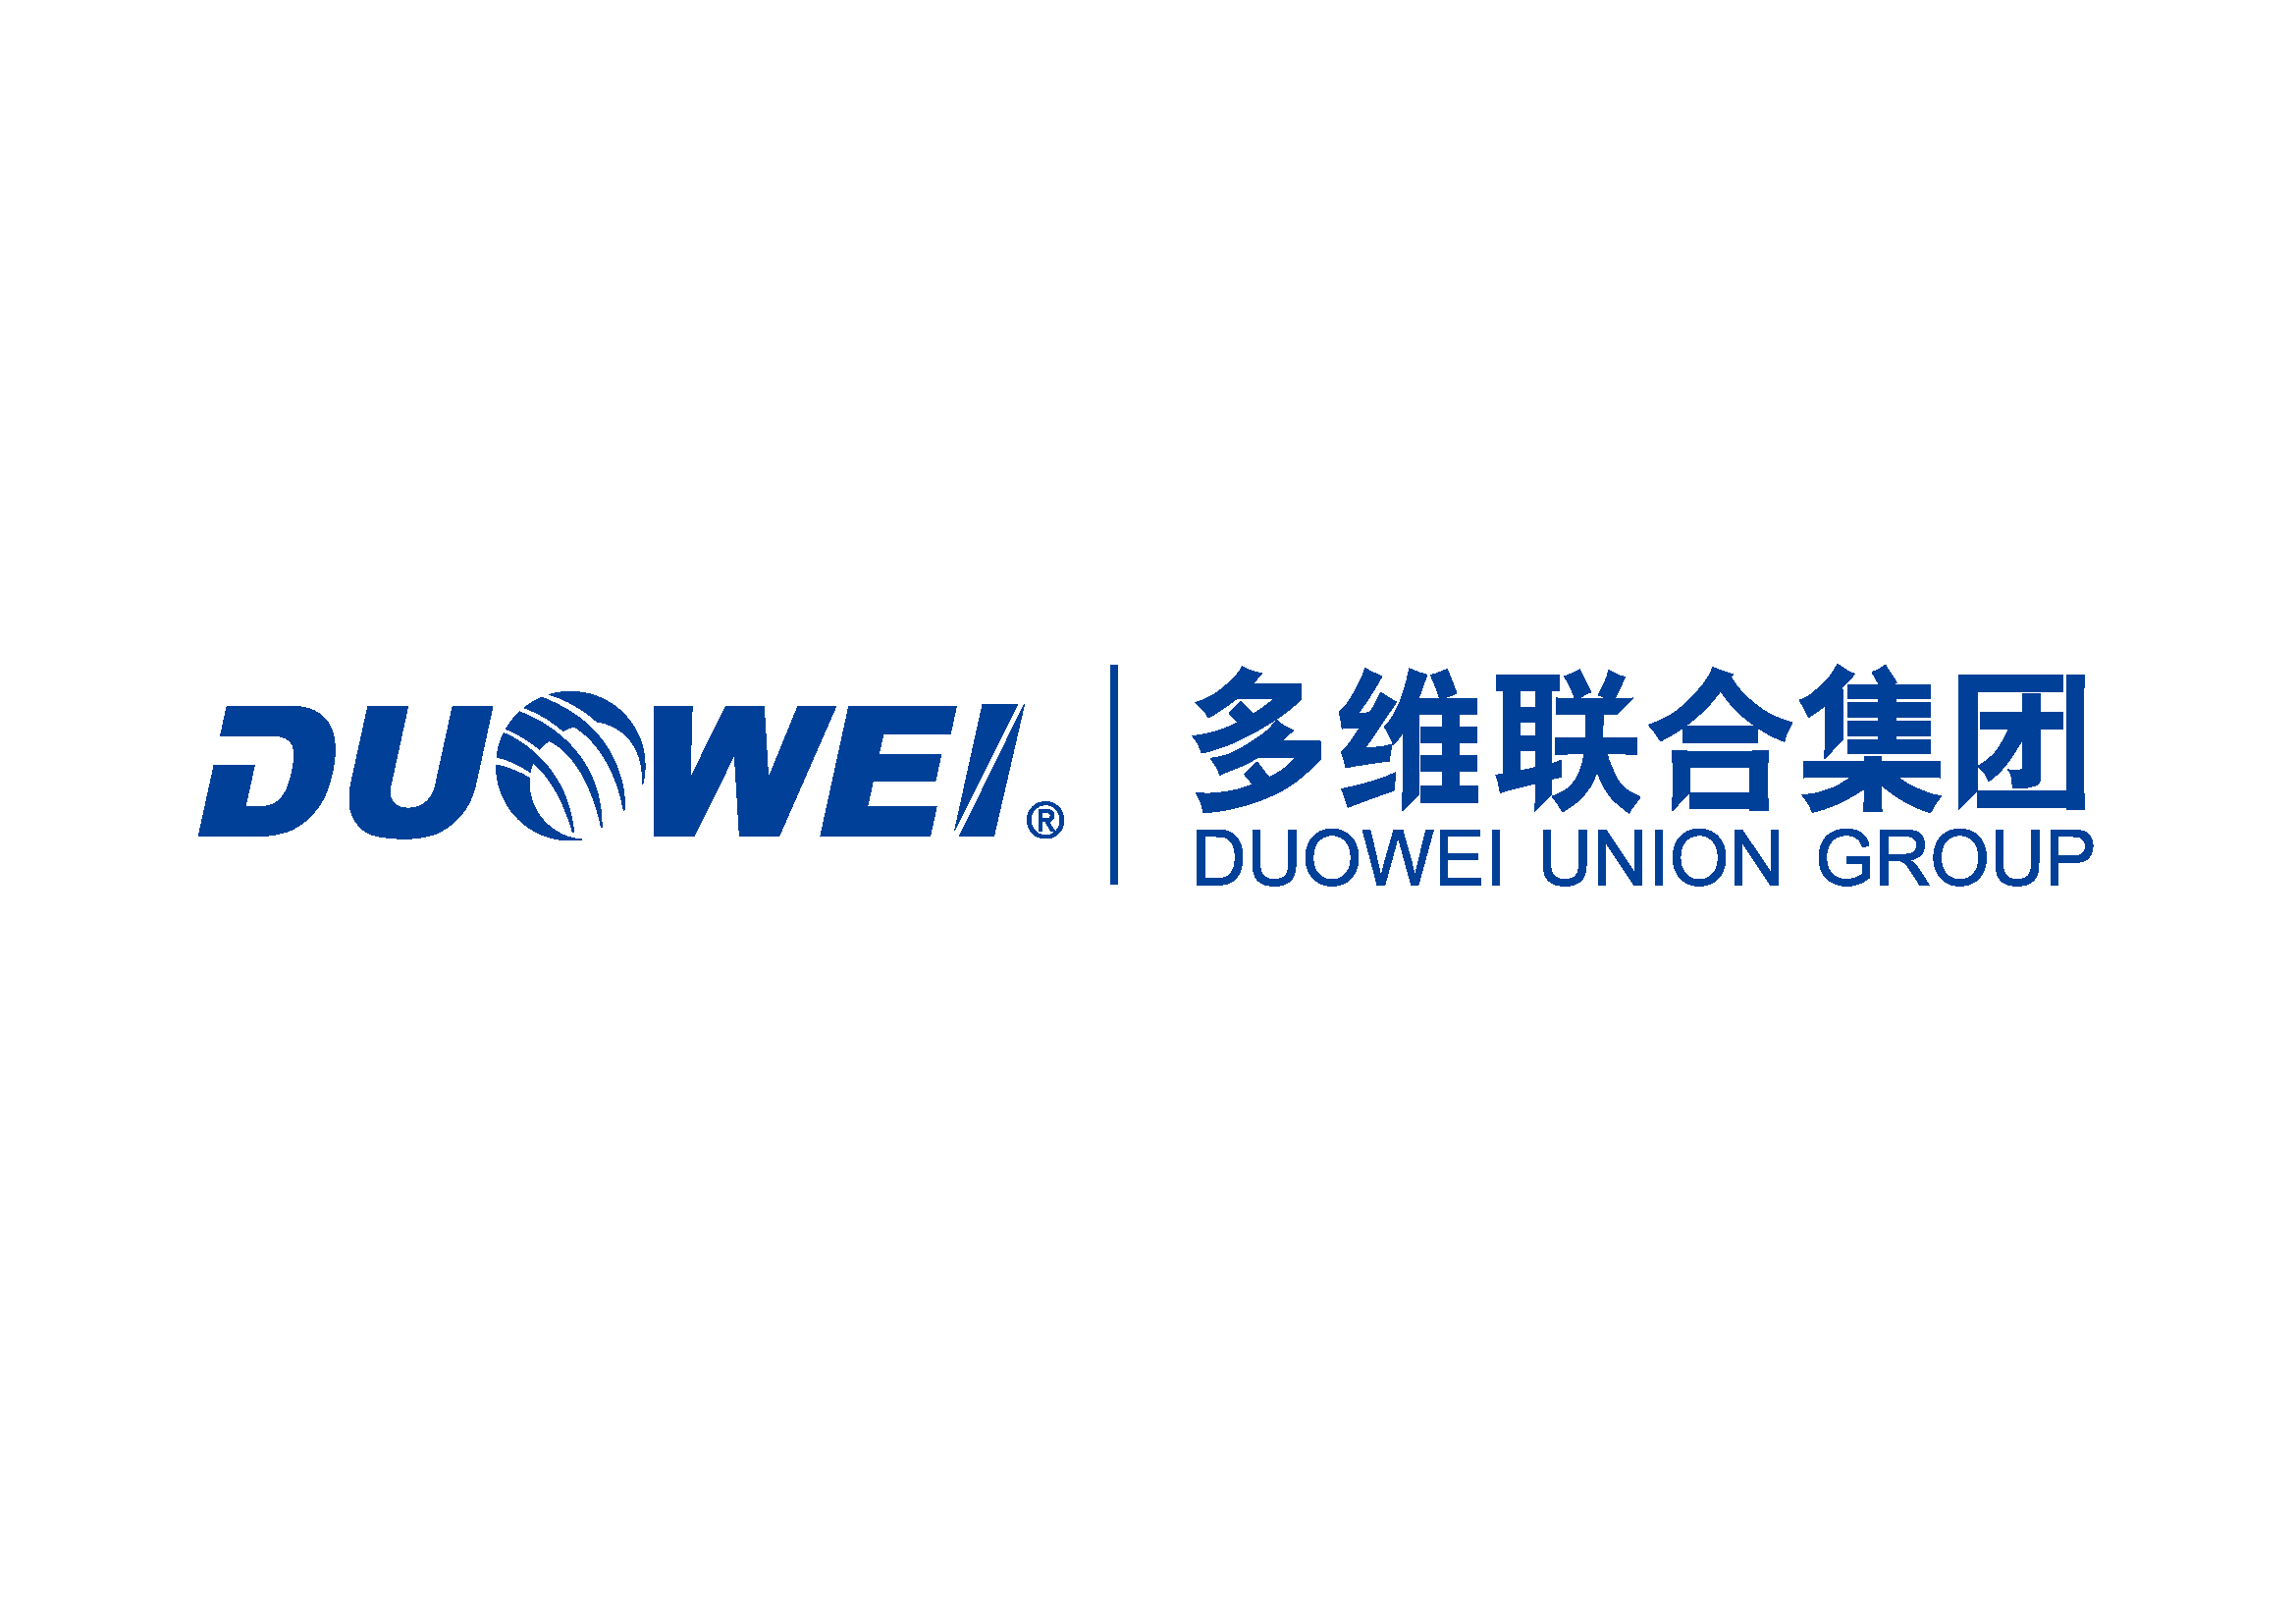 Beijing duowei eispt international project technology co.,ltd